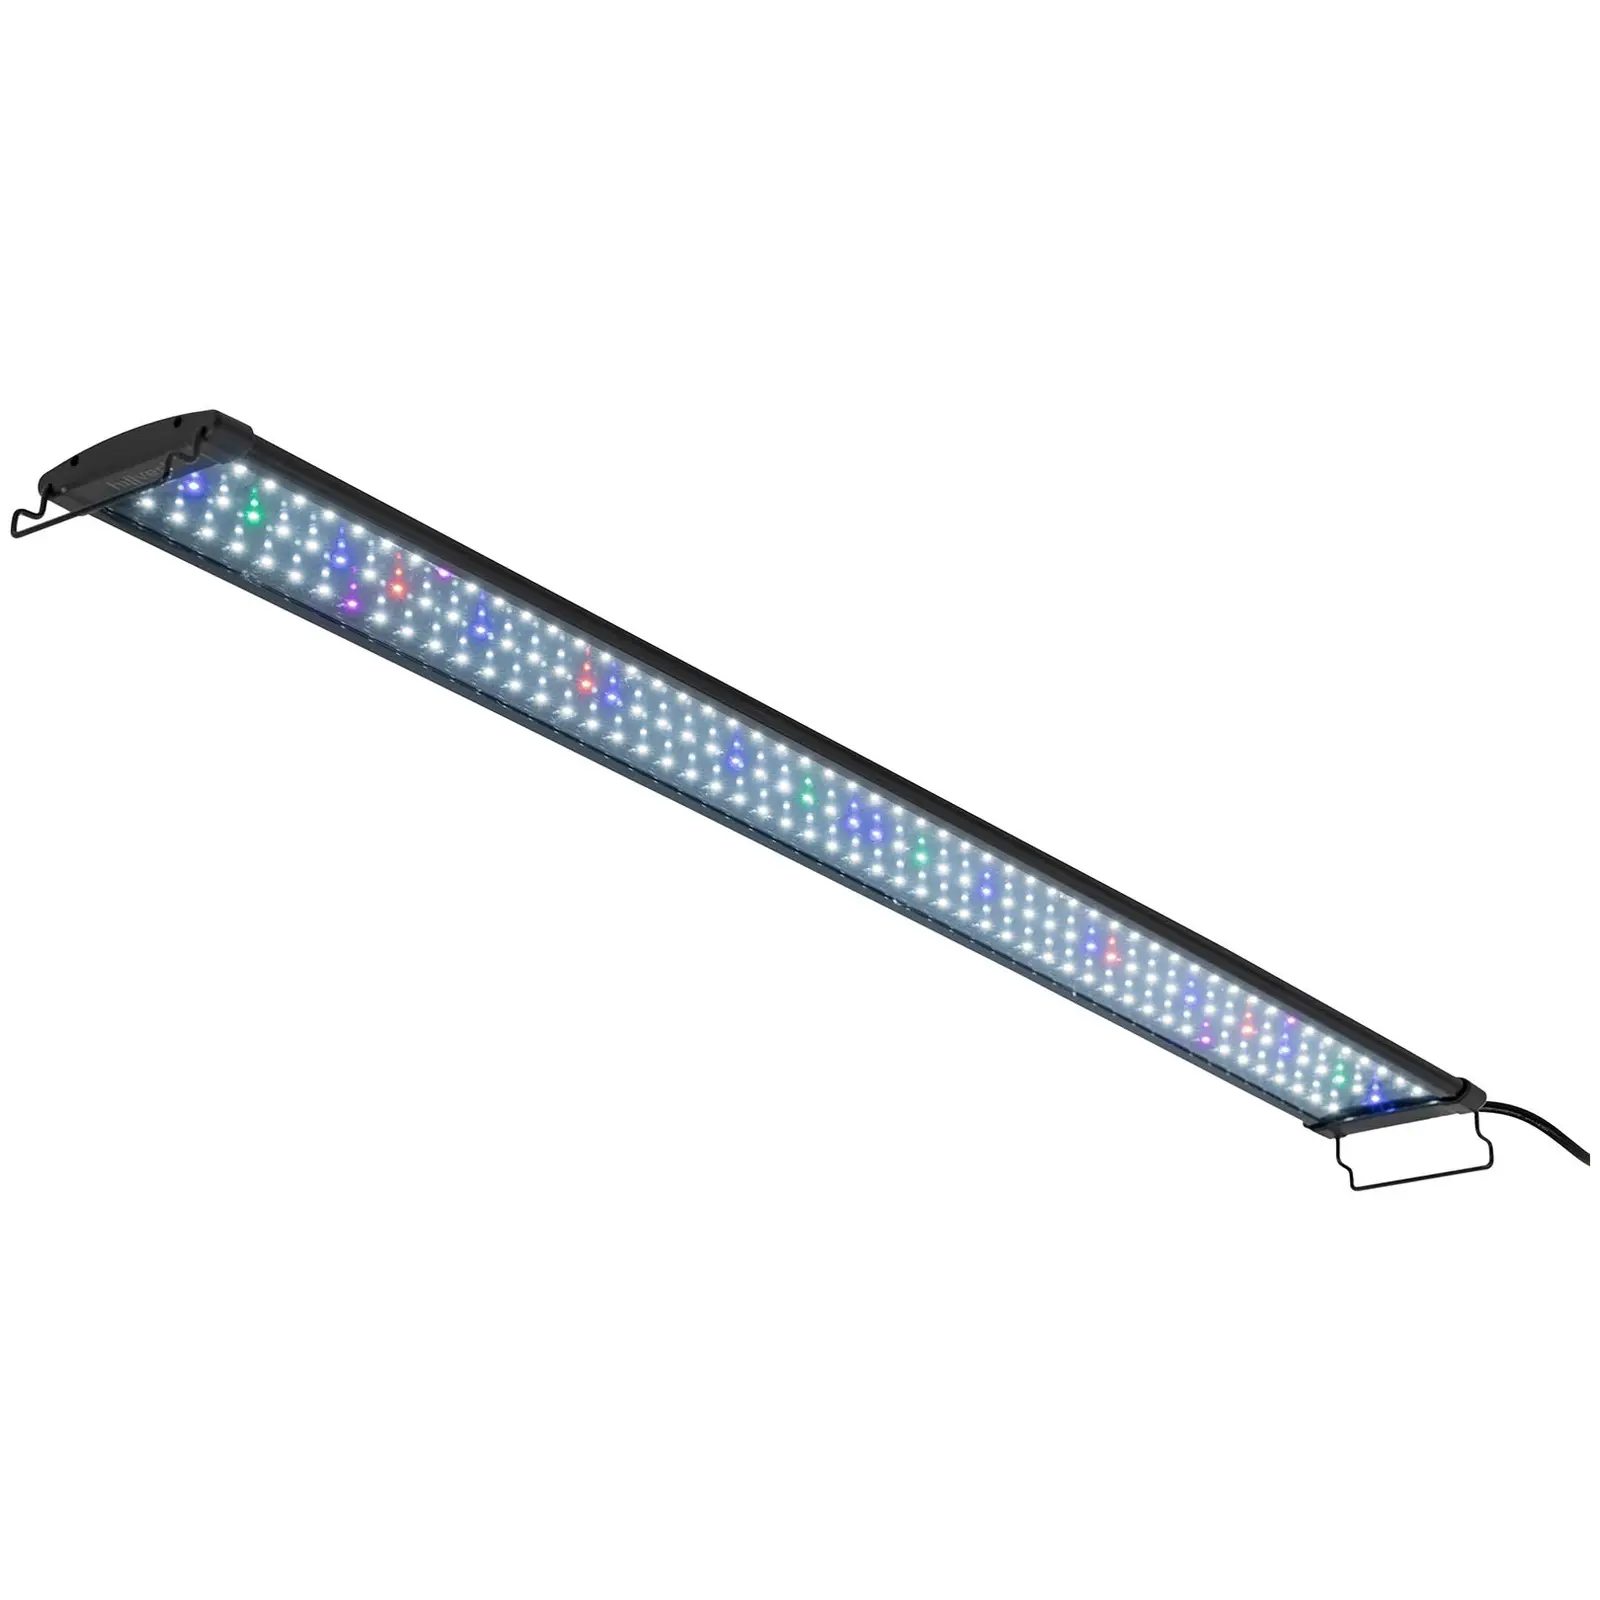 Lâmpada LED para aquário - 156 díodos LED - 30 W - 120 cm